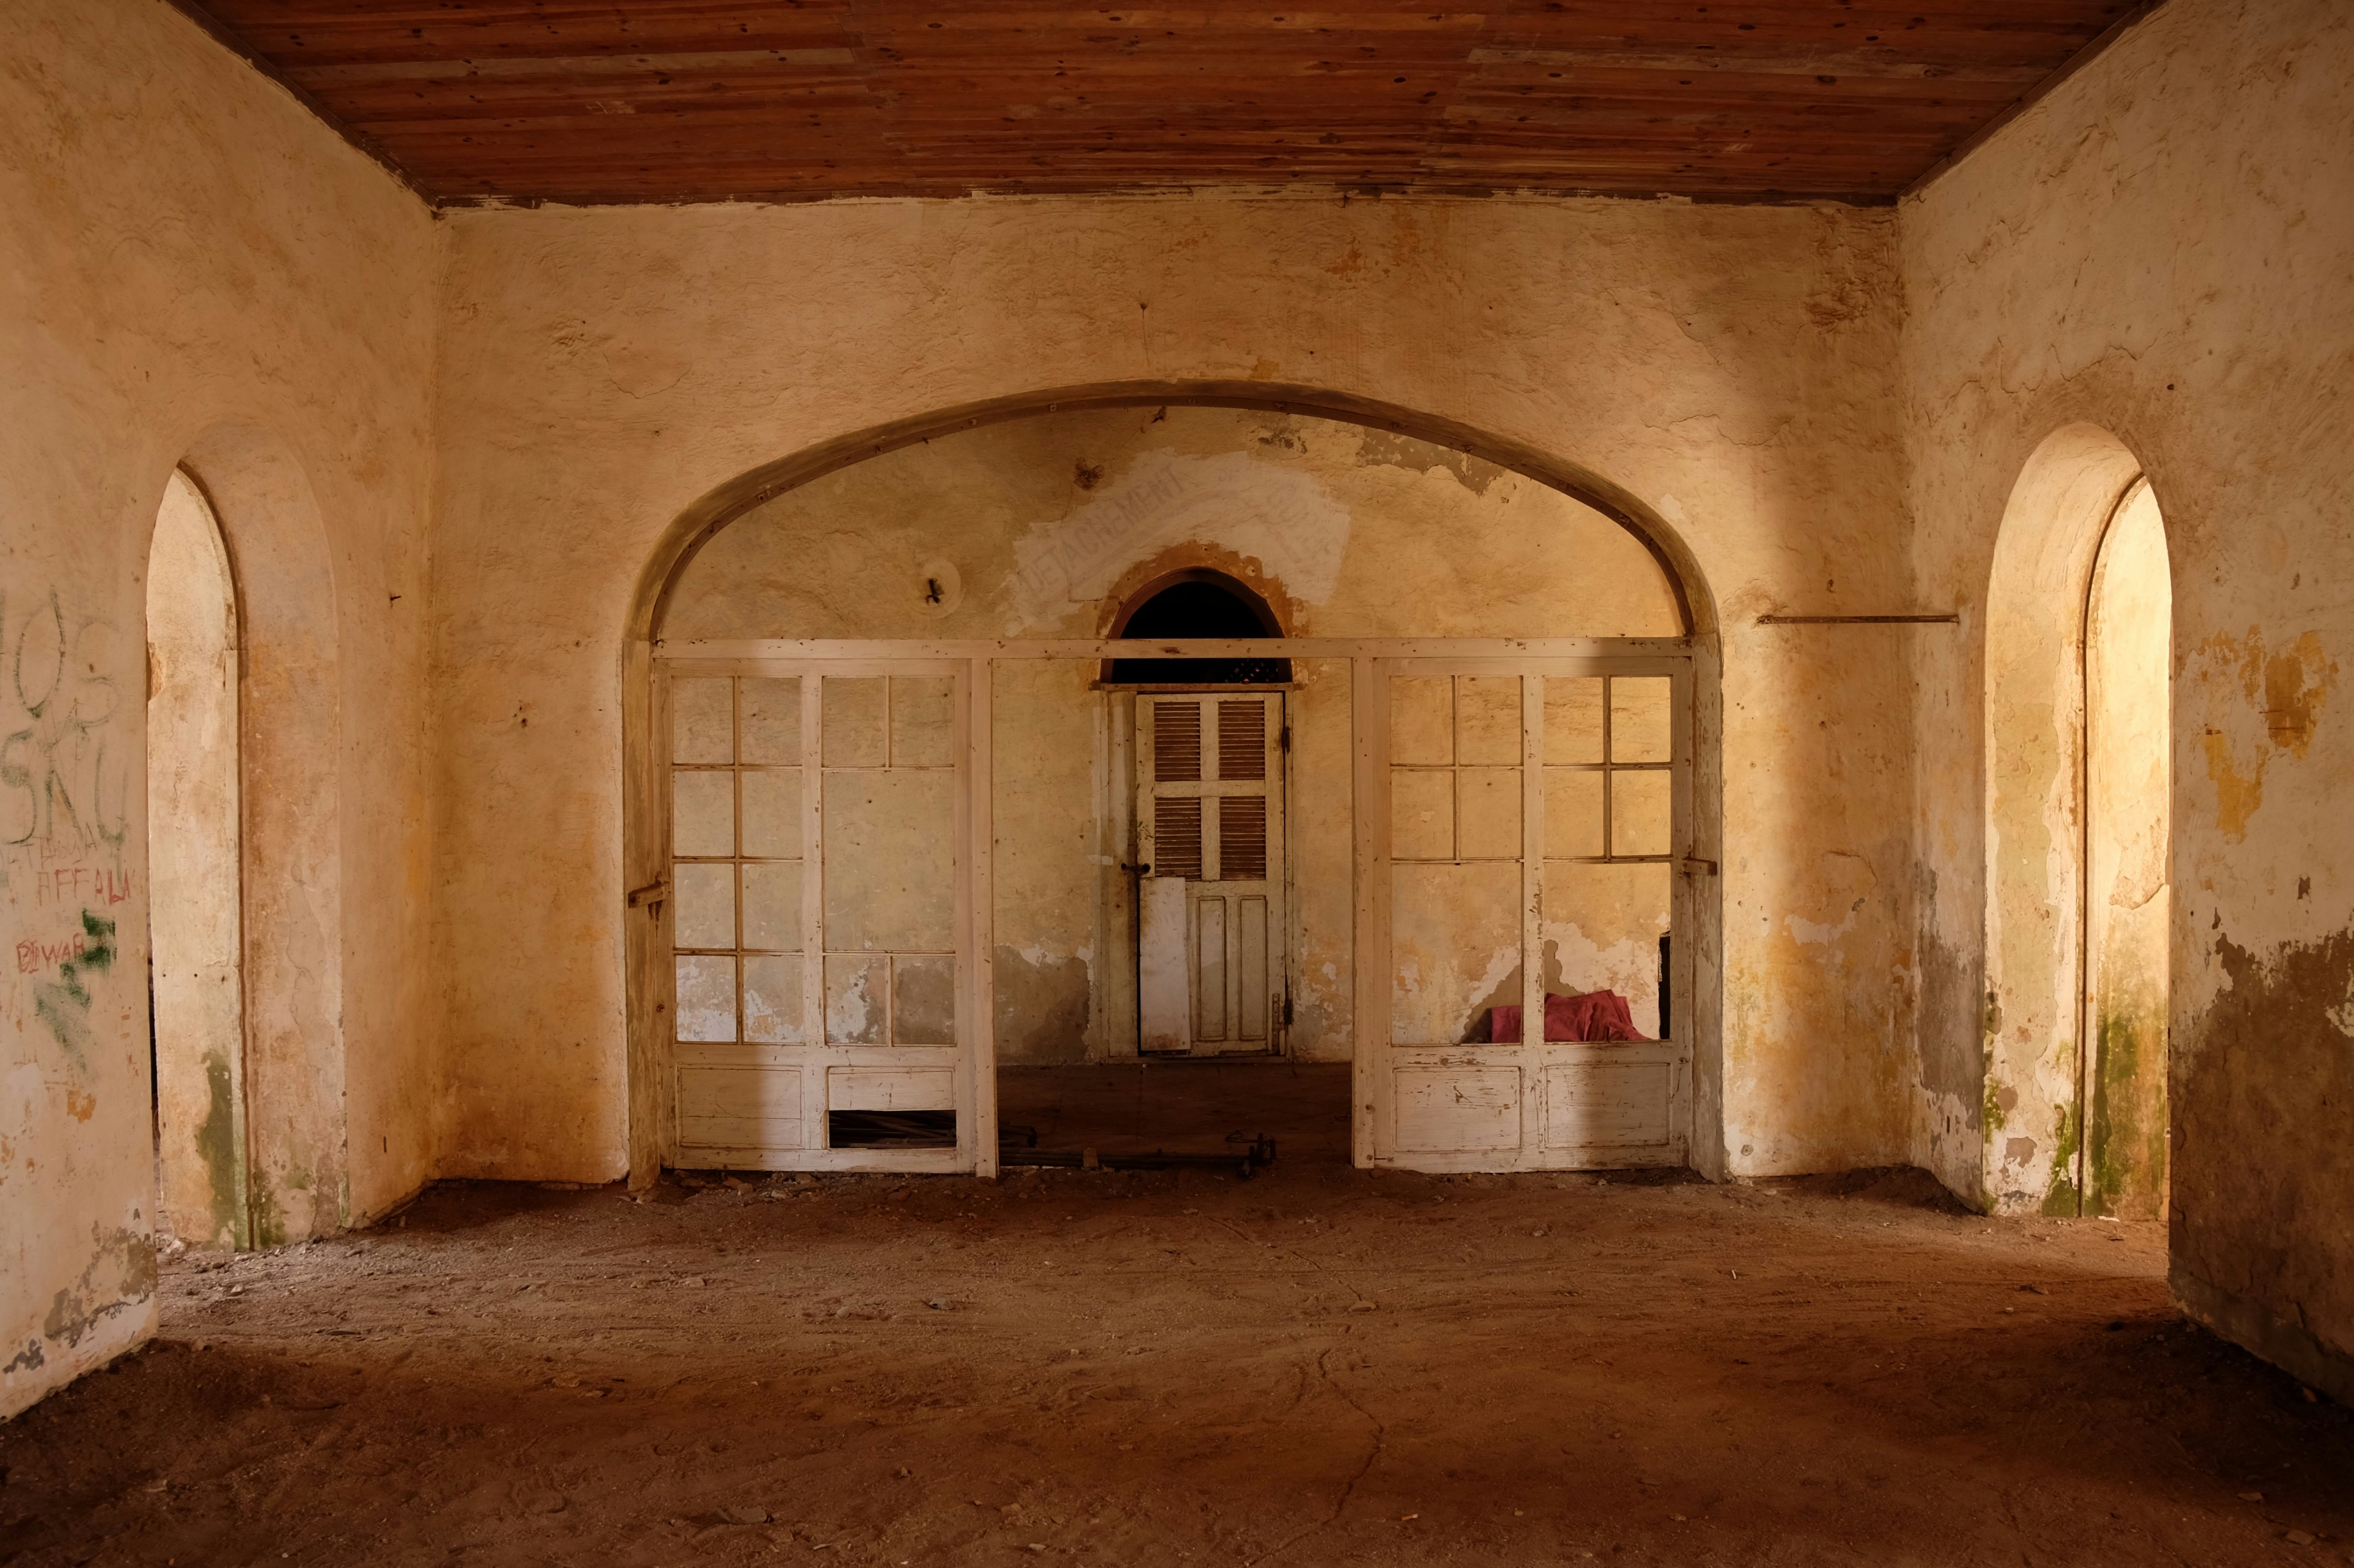 Governor’s palace, Gorée, Sénégal